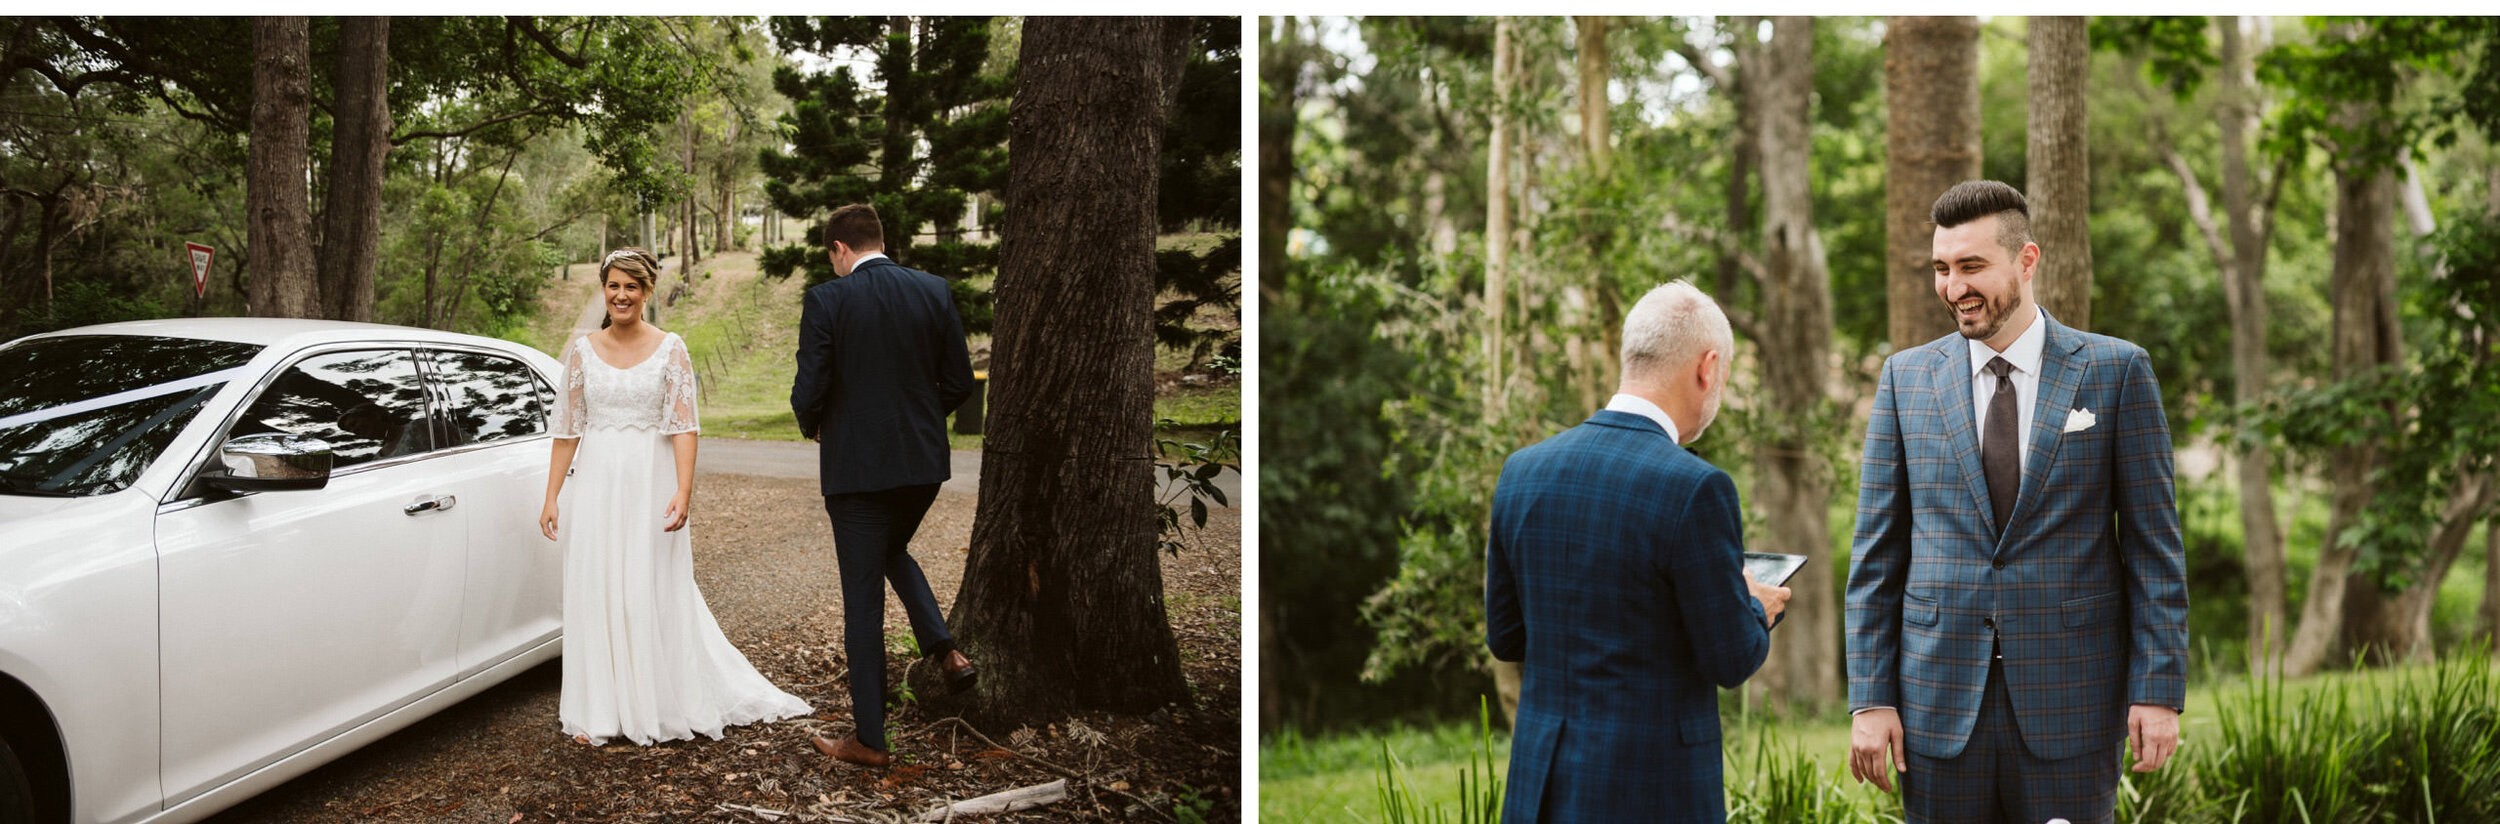 Bundaleer-Rainforest-Garden-Wedding-Photographer-004.jpg